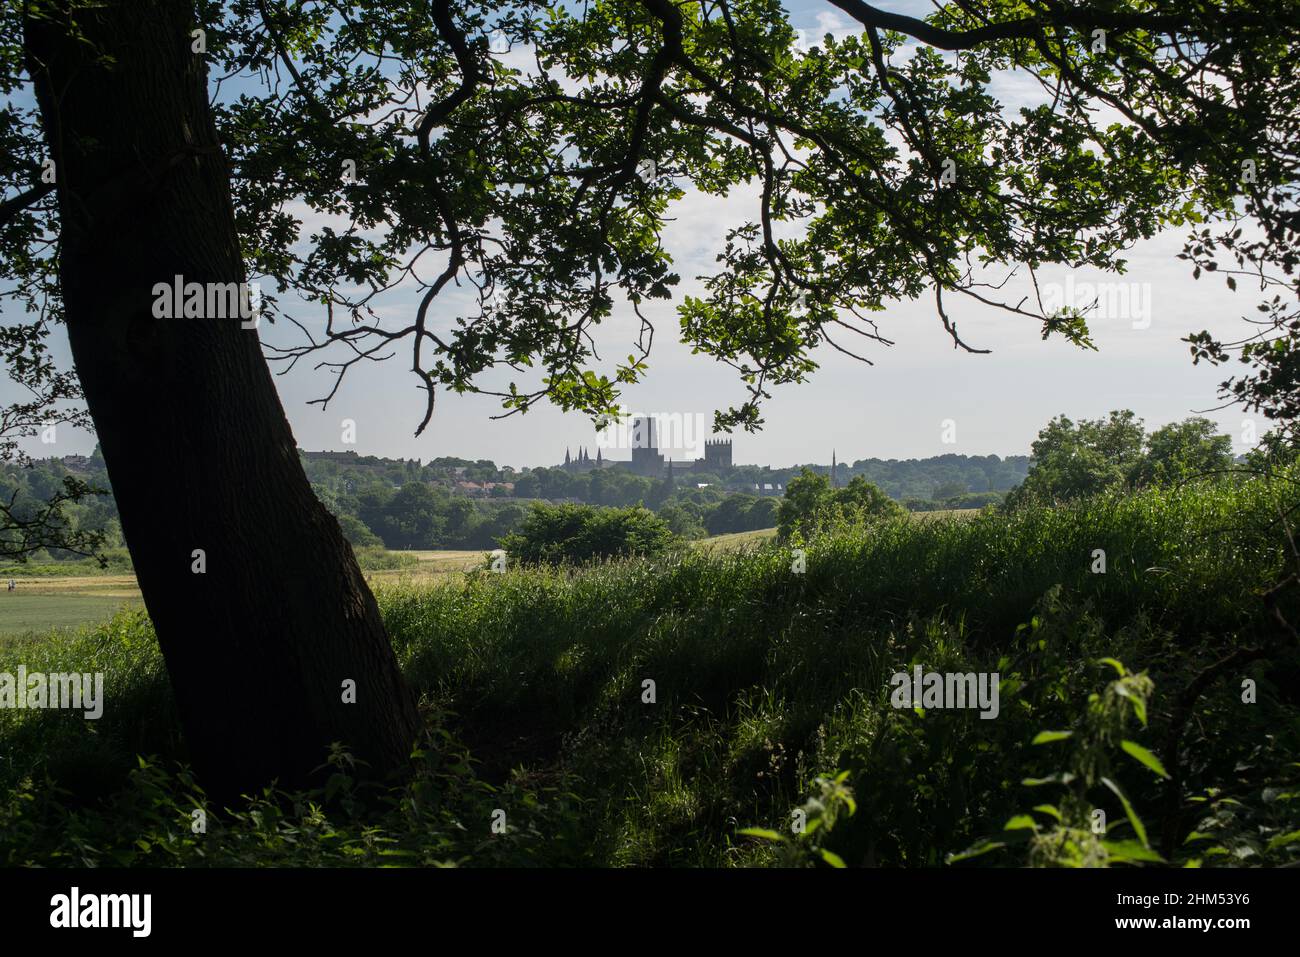 Catedral de Durham vista en la distancia cercana a través de las ramas colgantes de un árbol Foto de stock